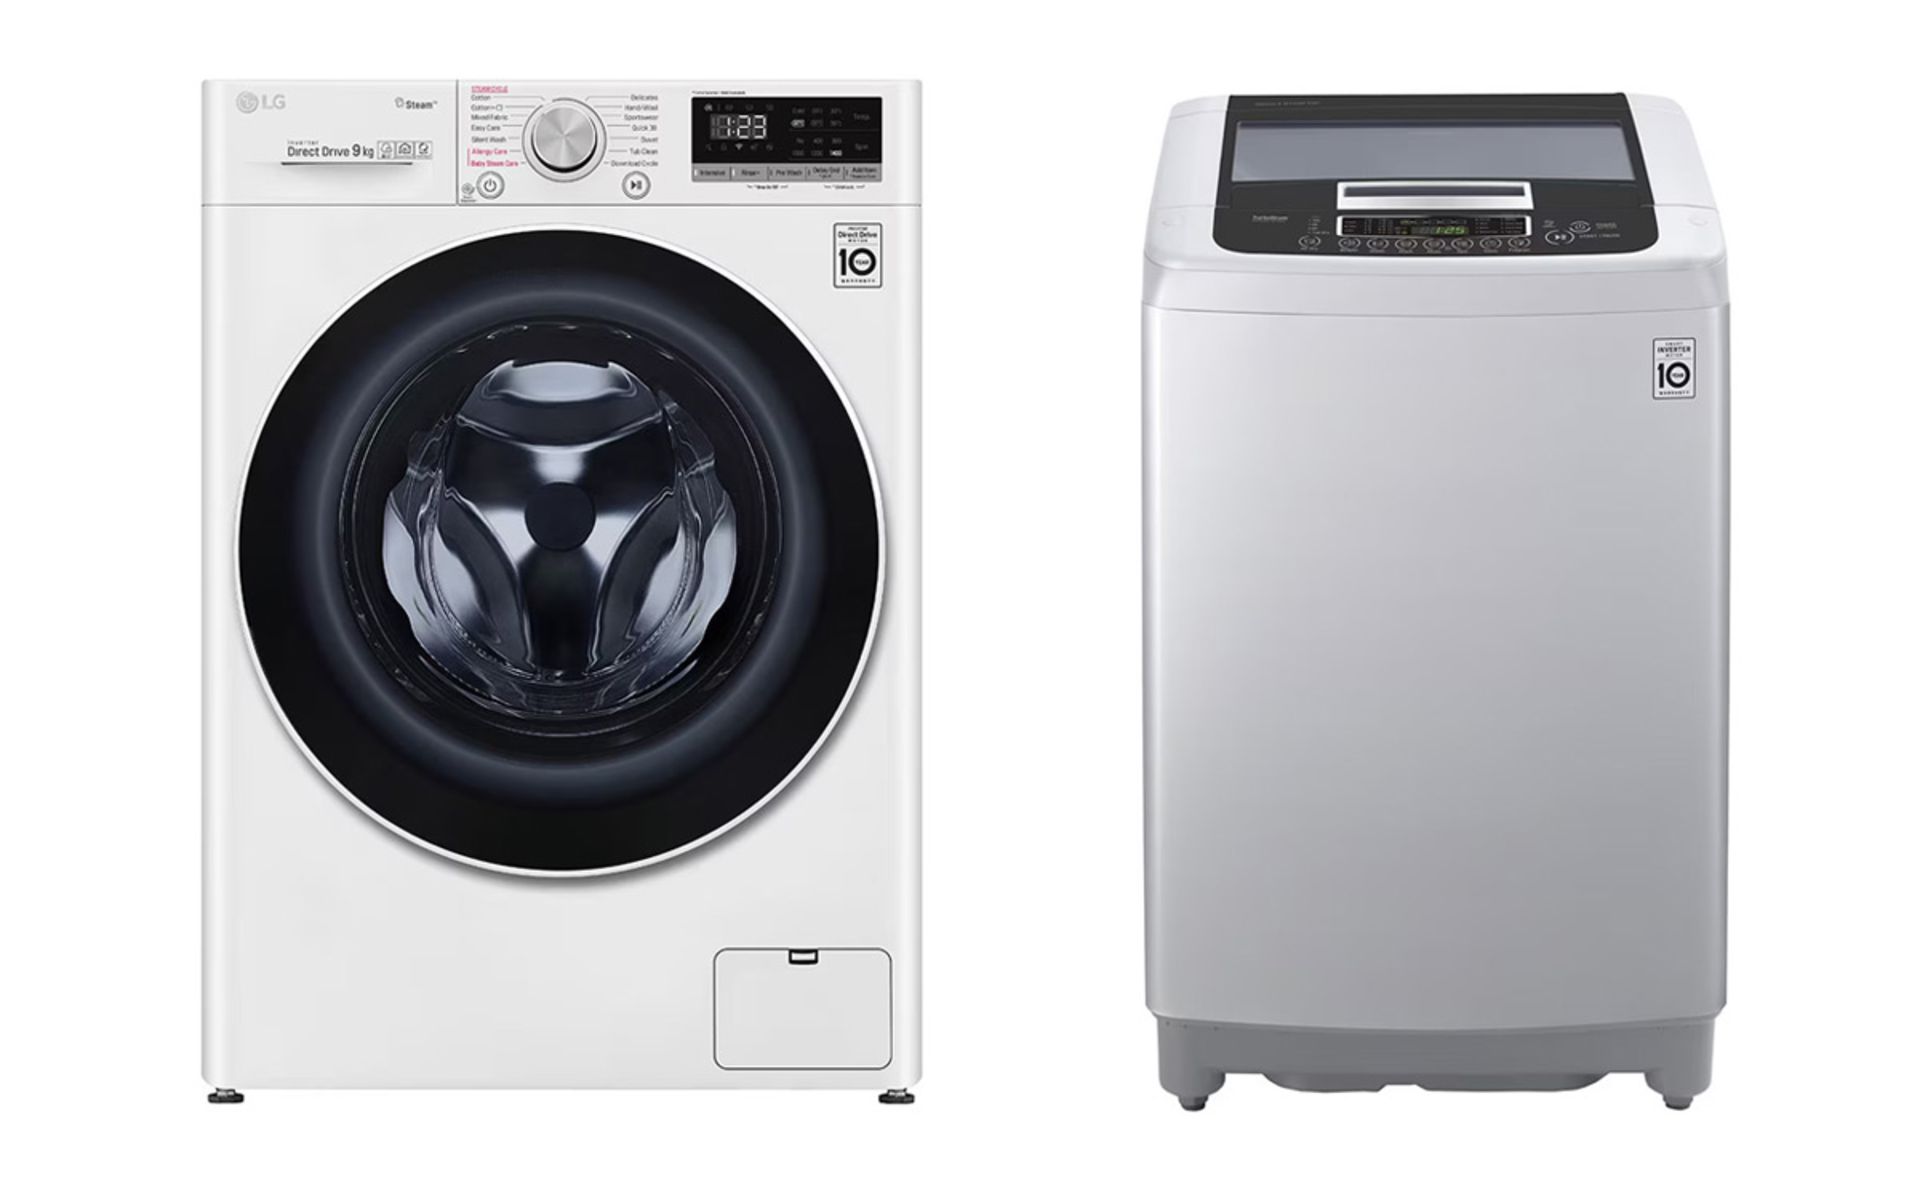 انواع ماشین لباسشویی